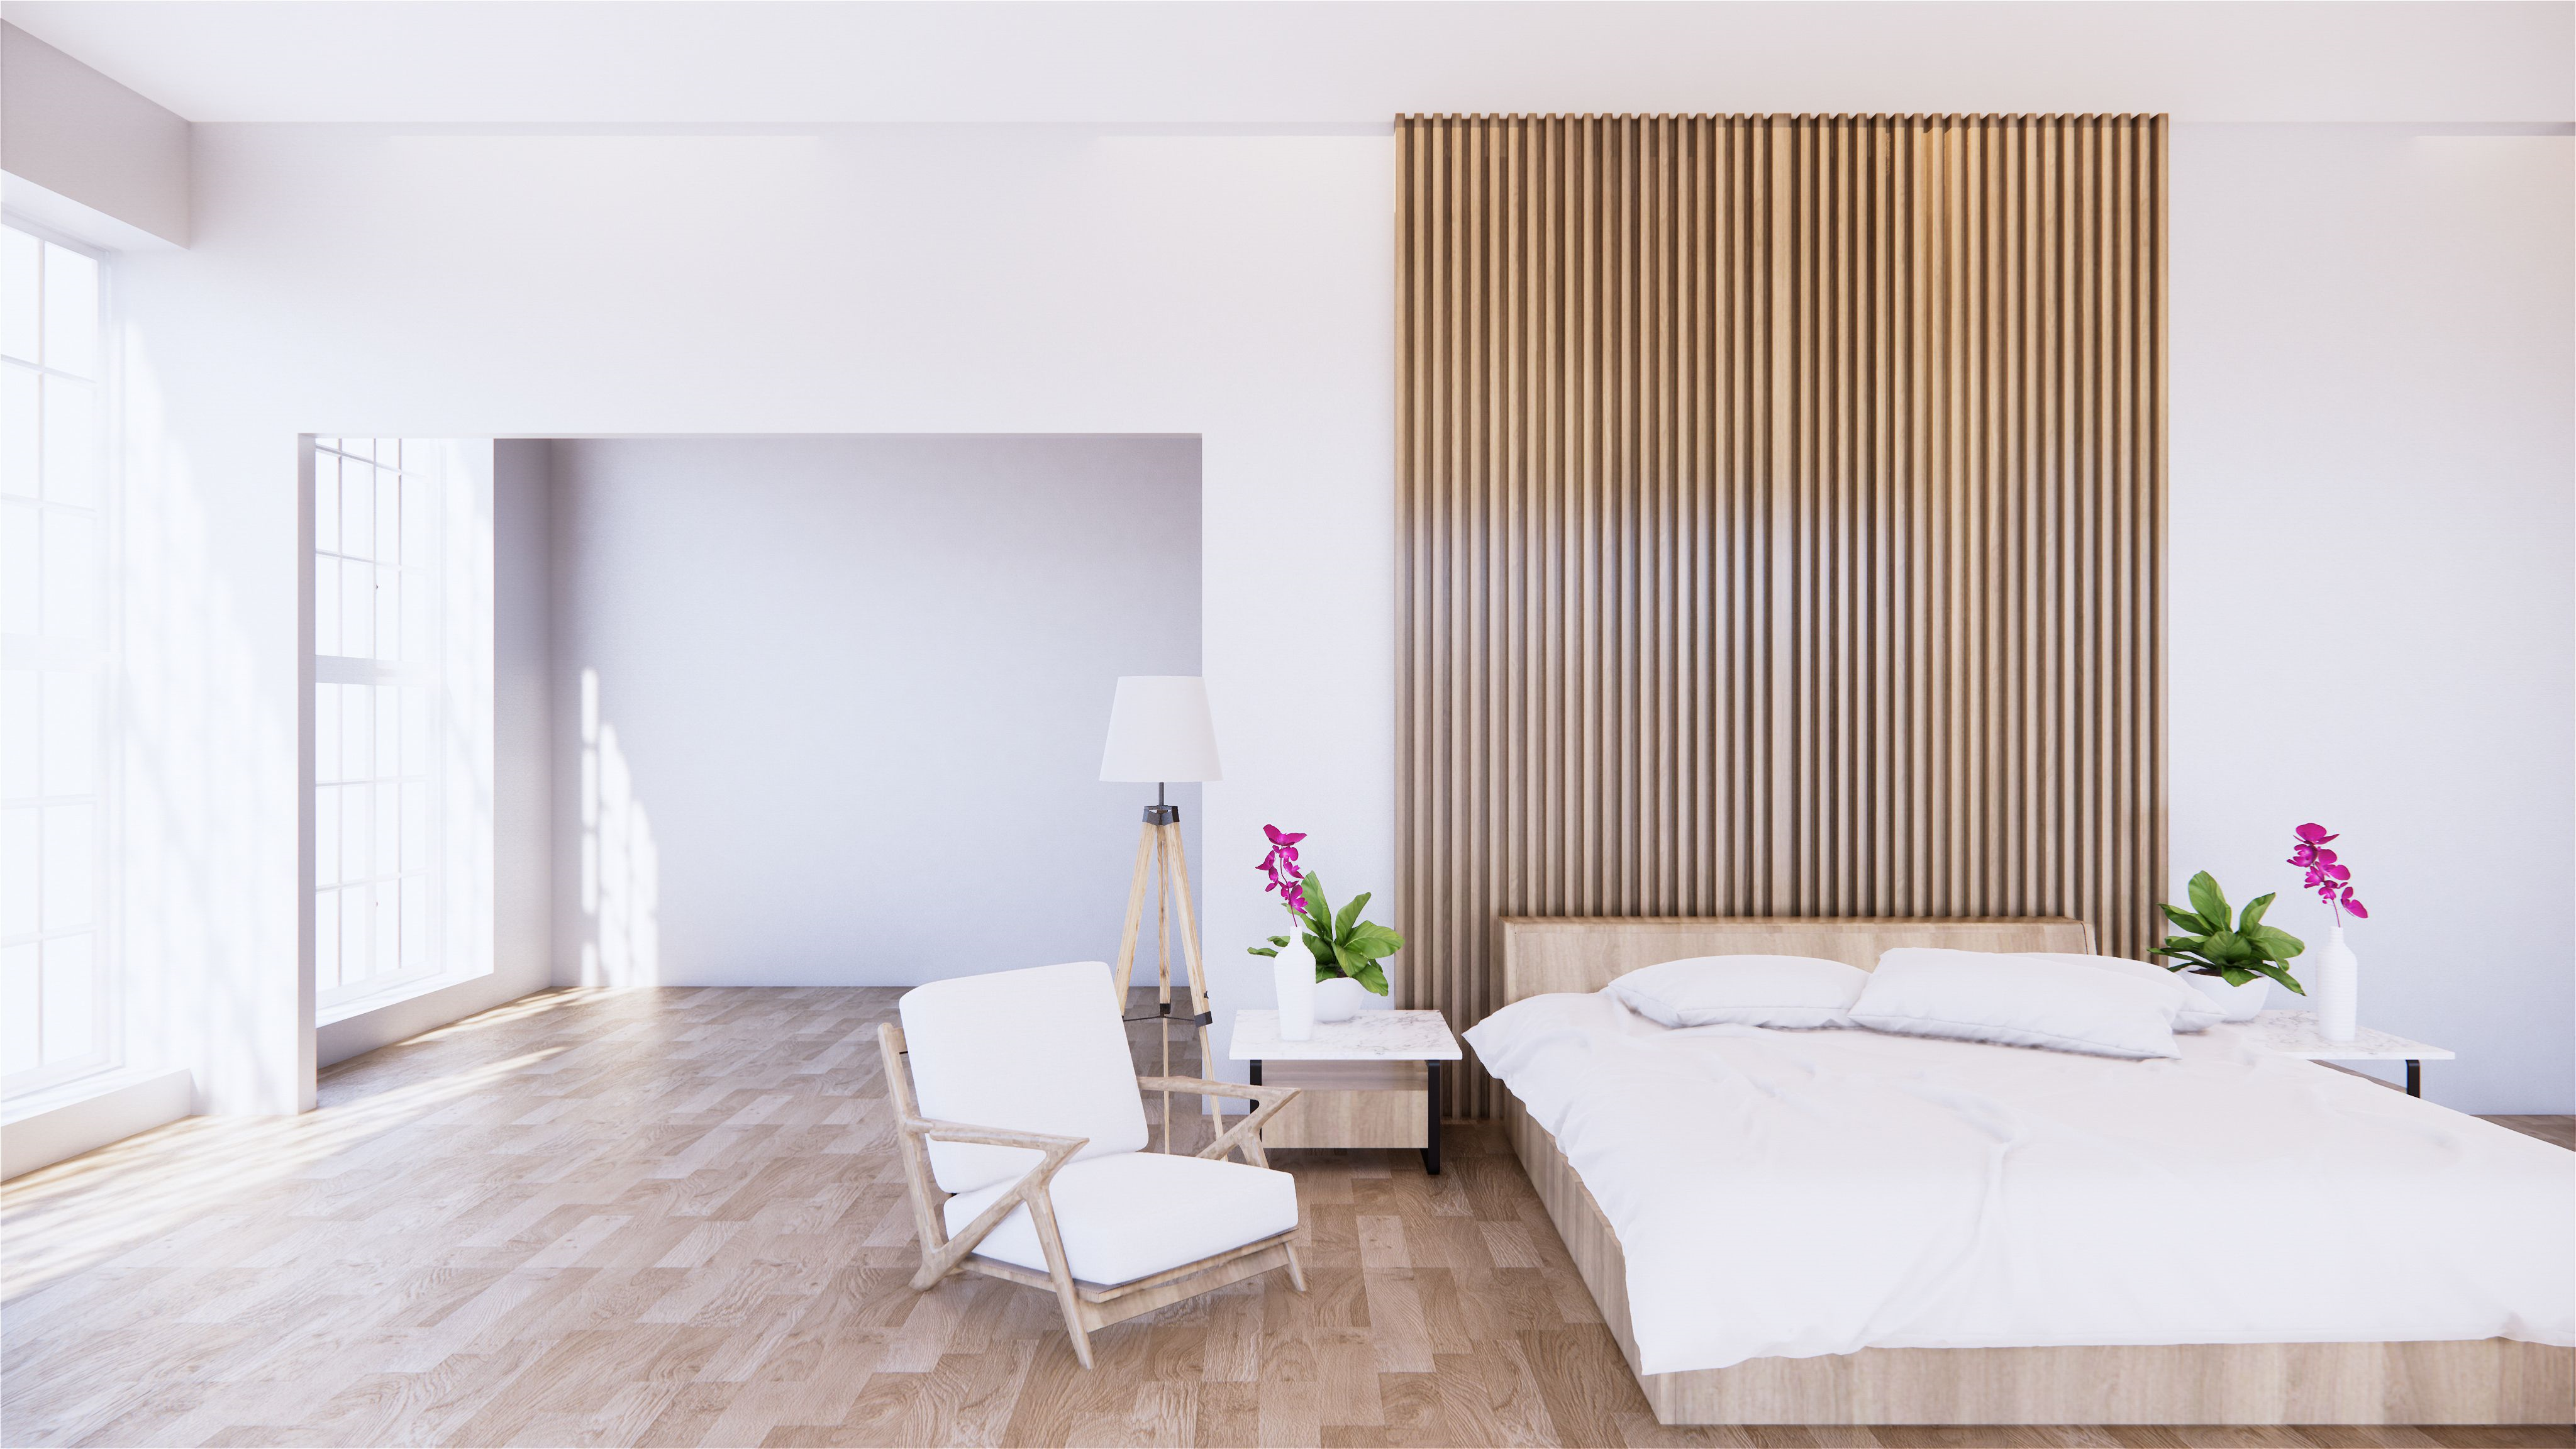 Wooden modern bedroom villa furniture design